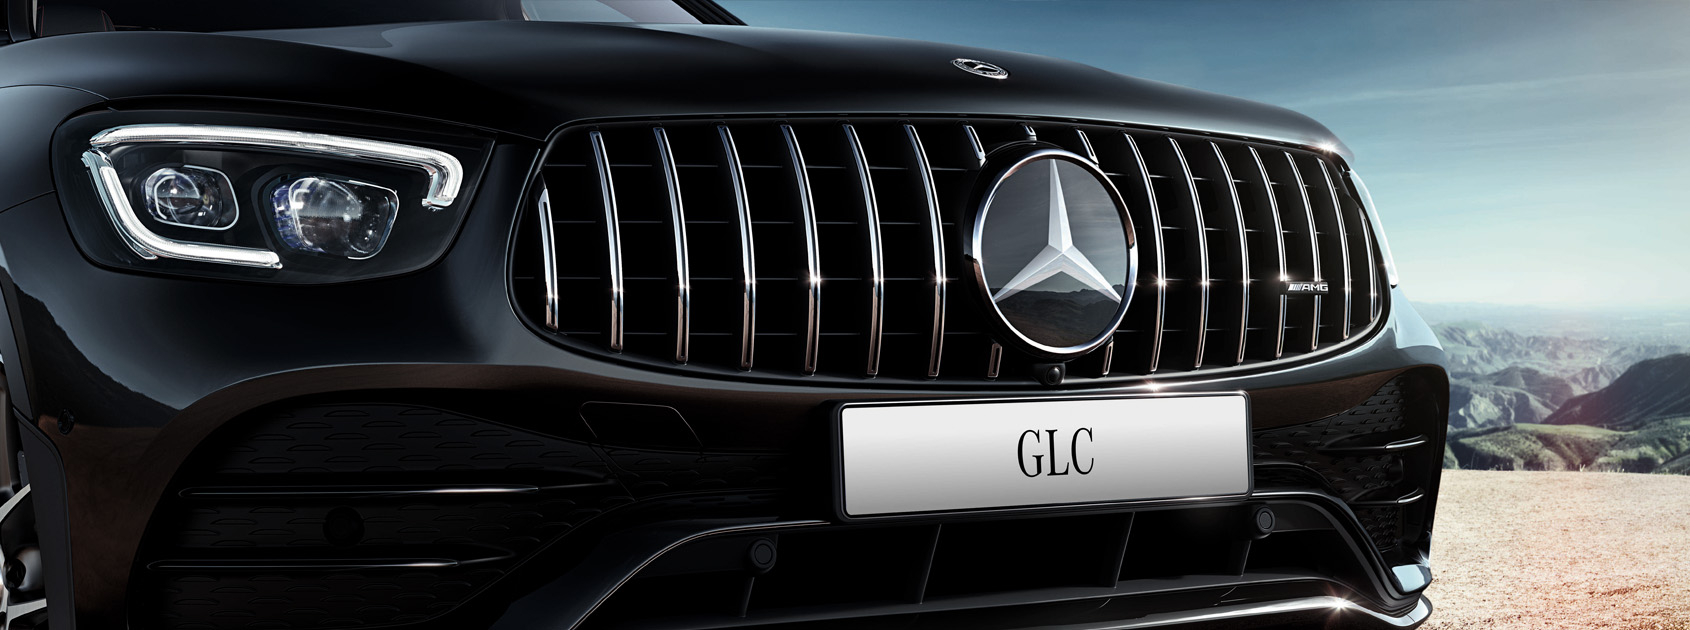 Mercedes-AMG GLC Coupé